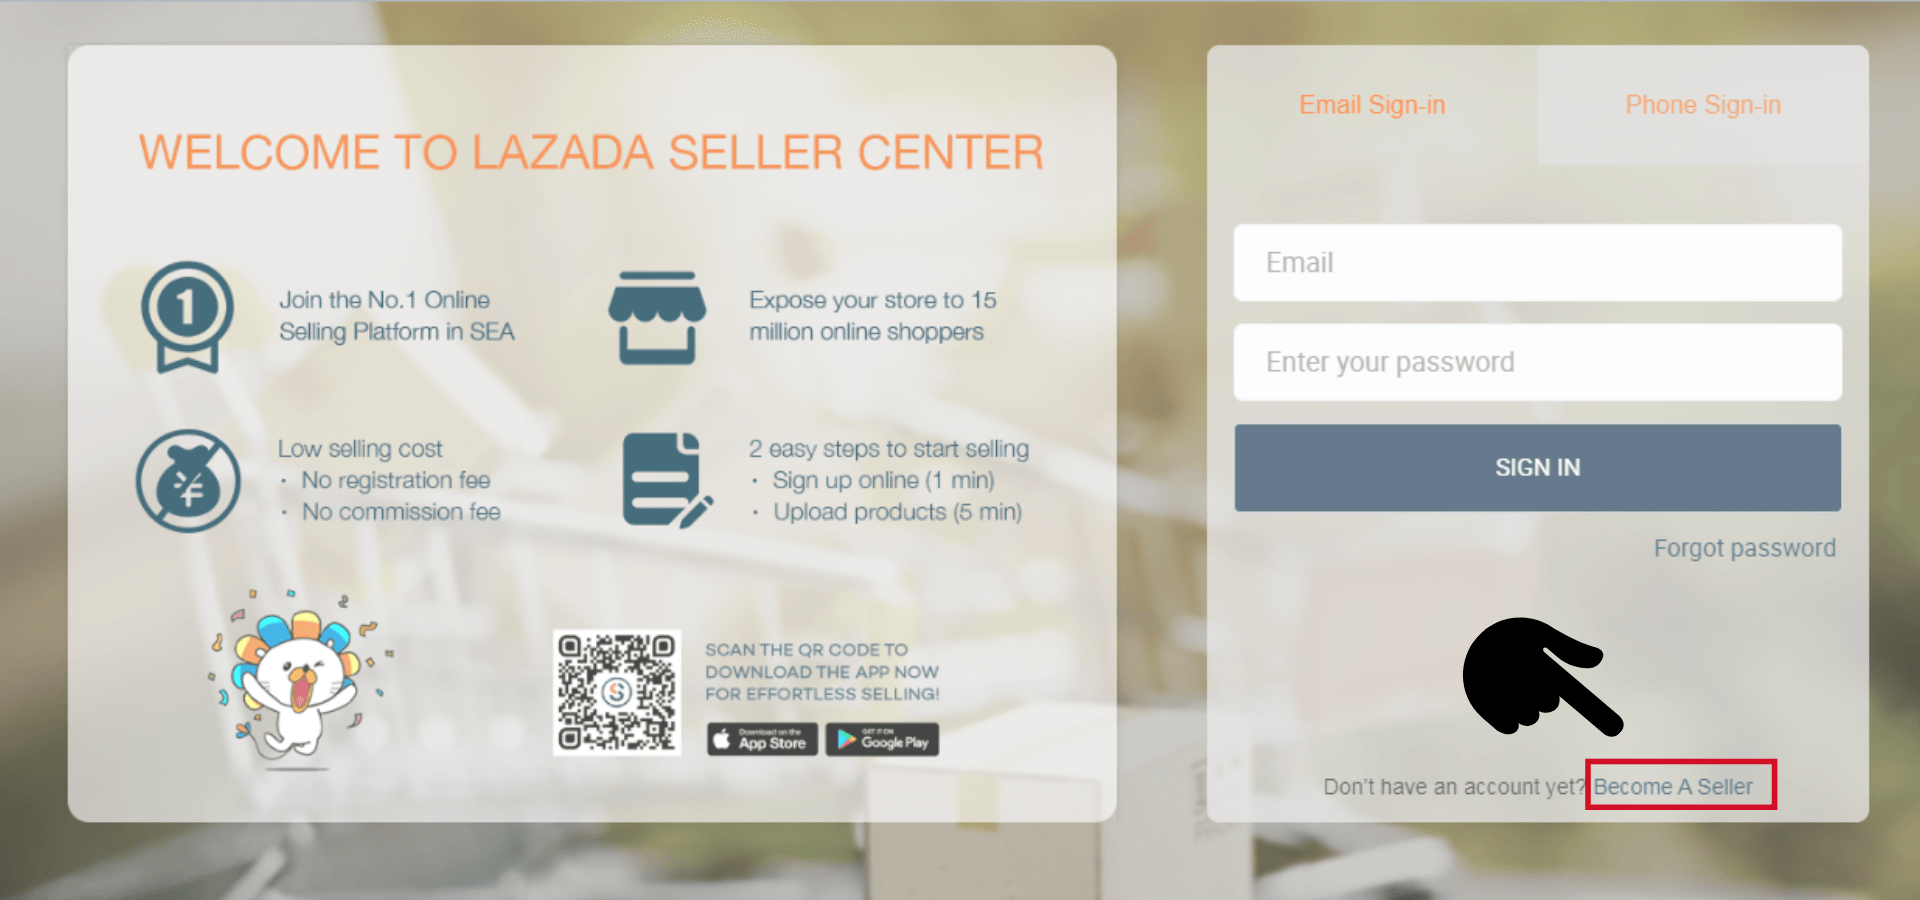 Hướng dẫn bán hàng trên Lazada của chúng tôi với tư cách là người bán hàng quốc tế - Những điều cần biết